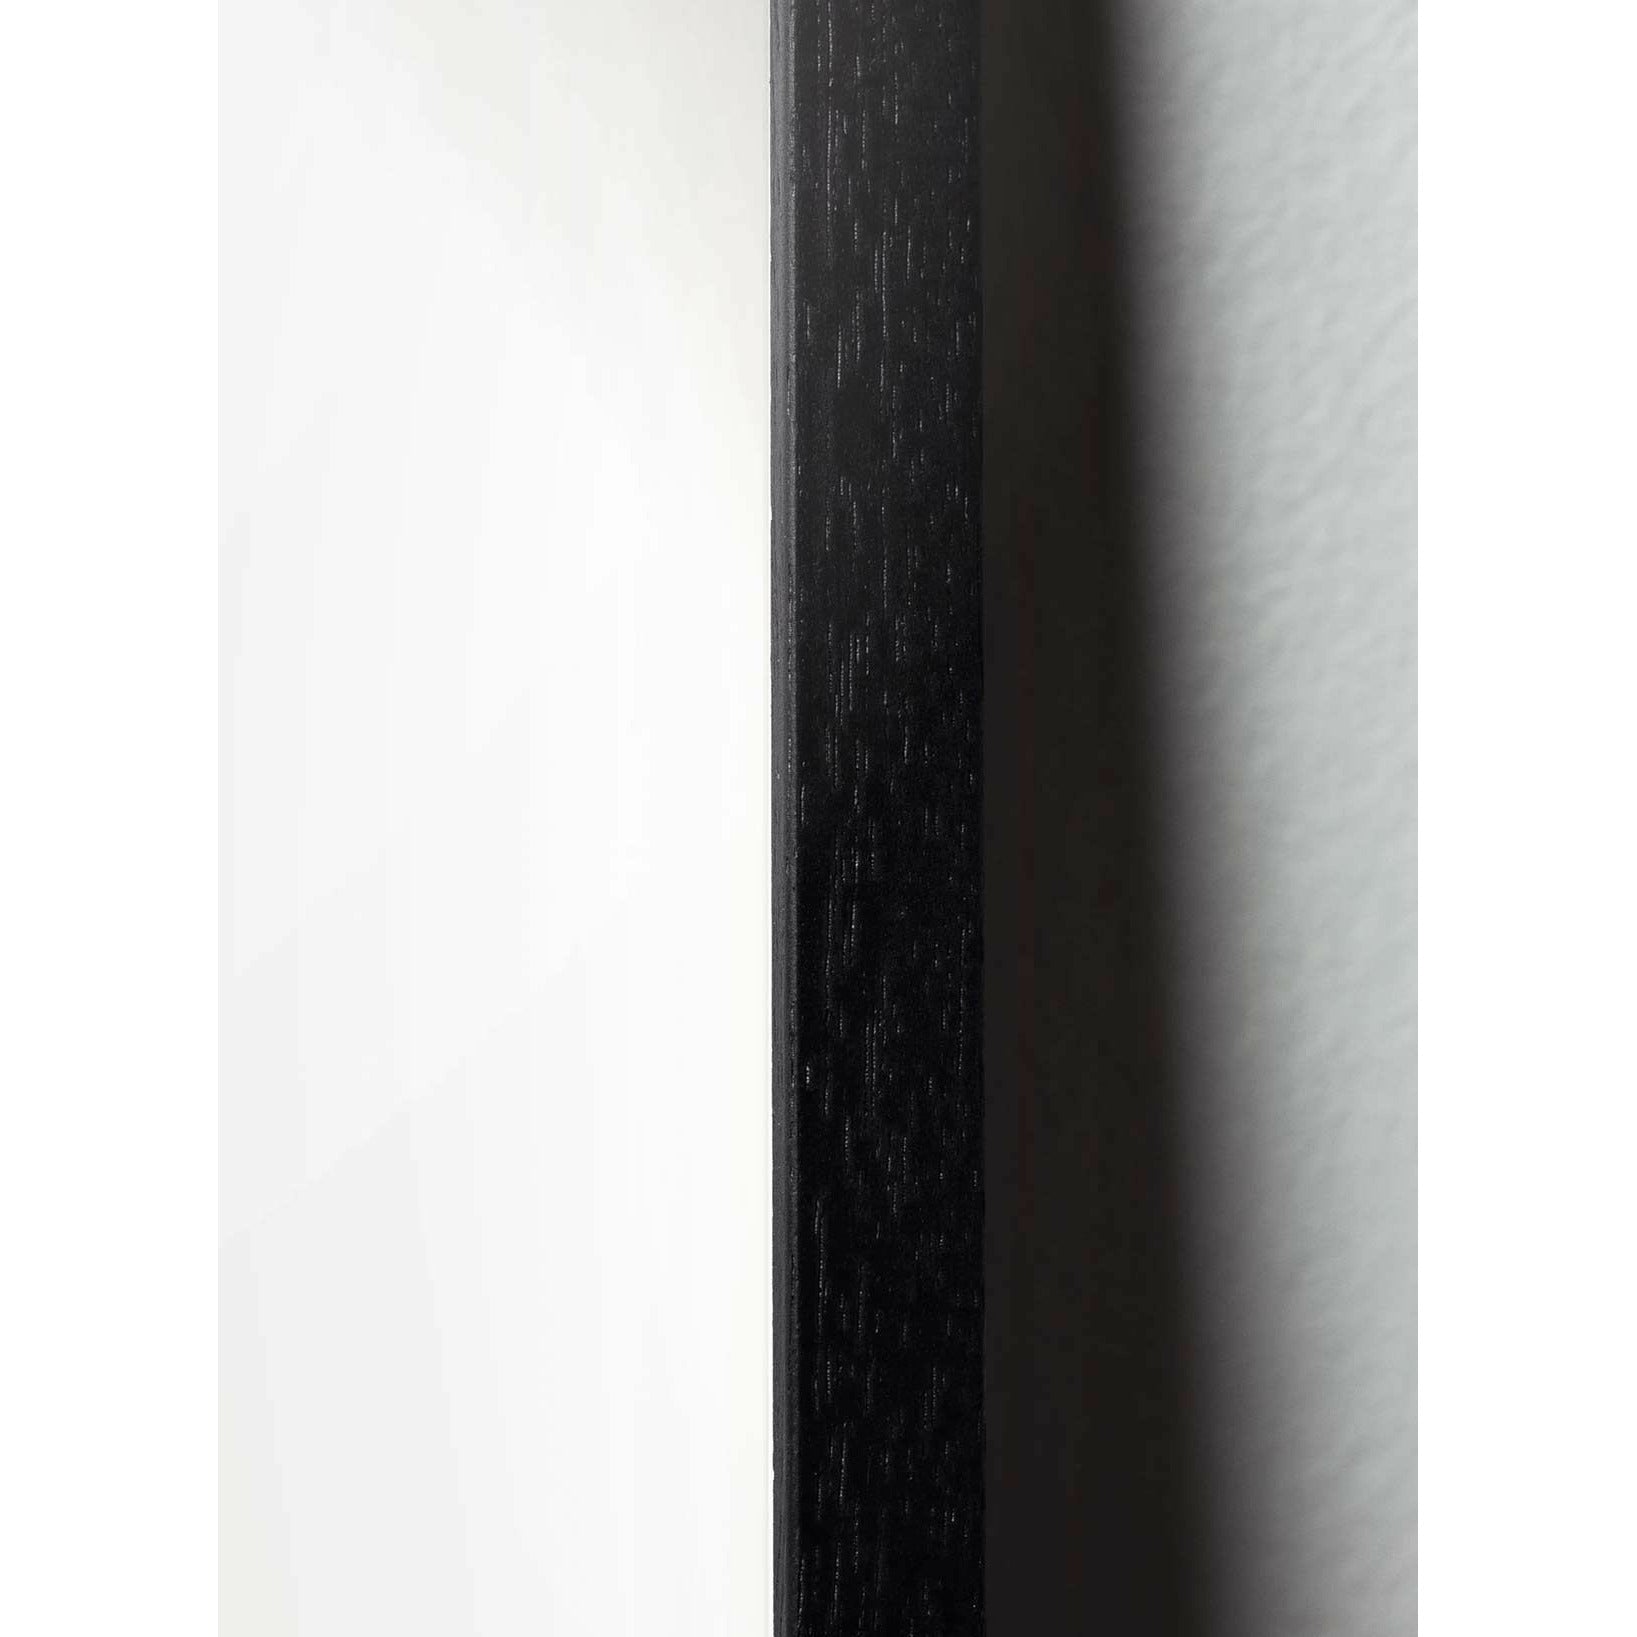 brainchild Blumenpot klassisches Poster, Rahmen im schwarzen lackierten Holz 30x40 cm, schwarzer Hintergrund